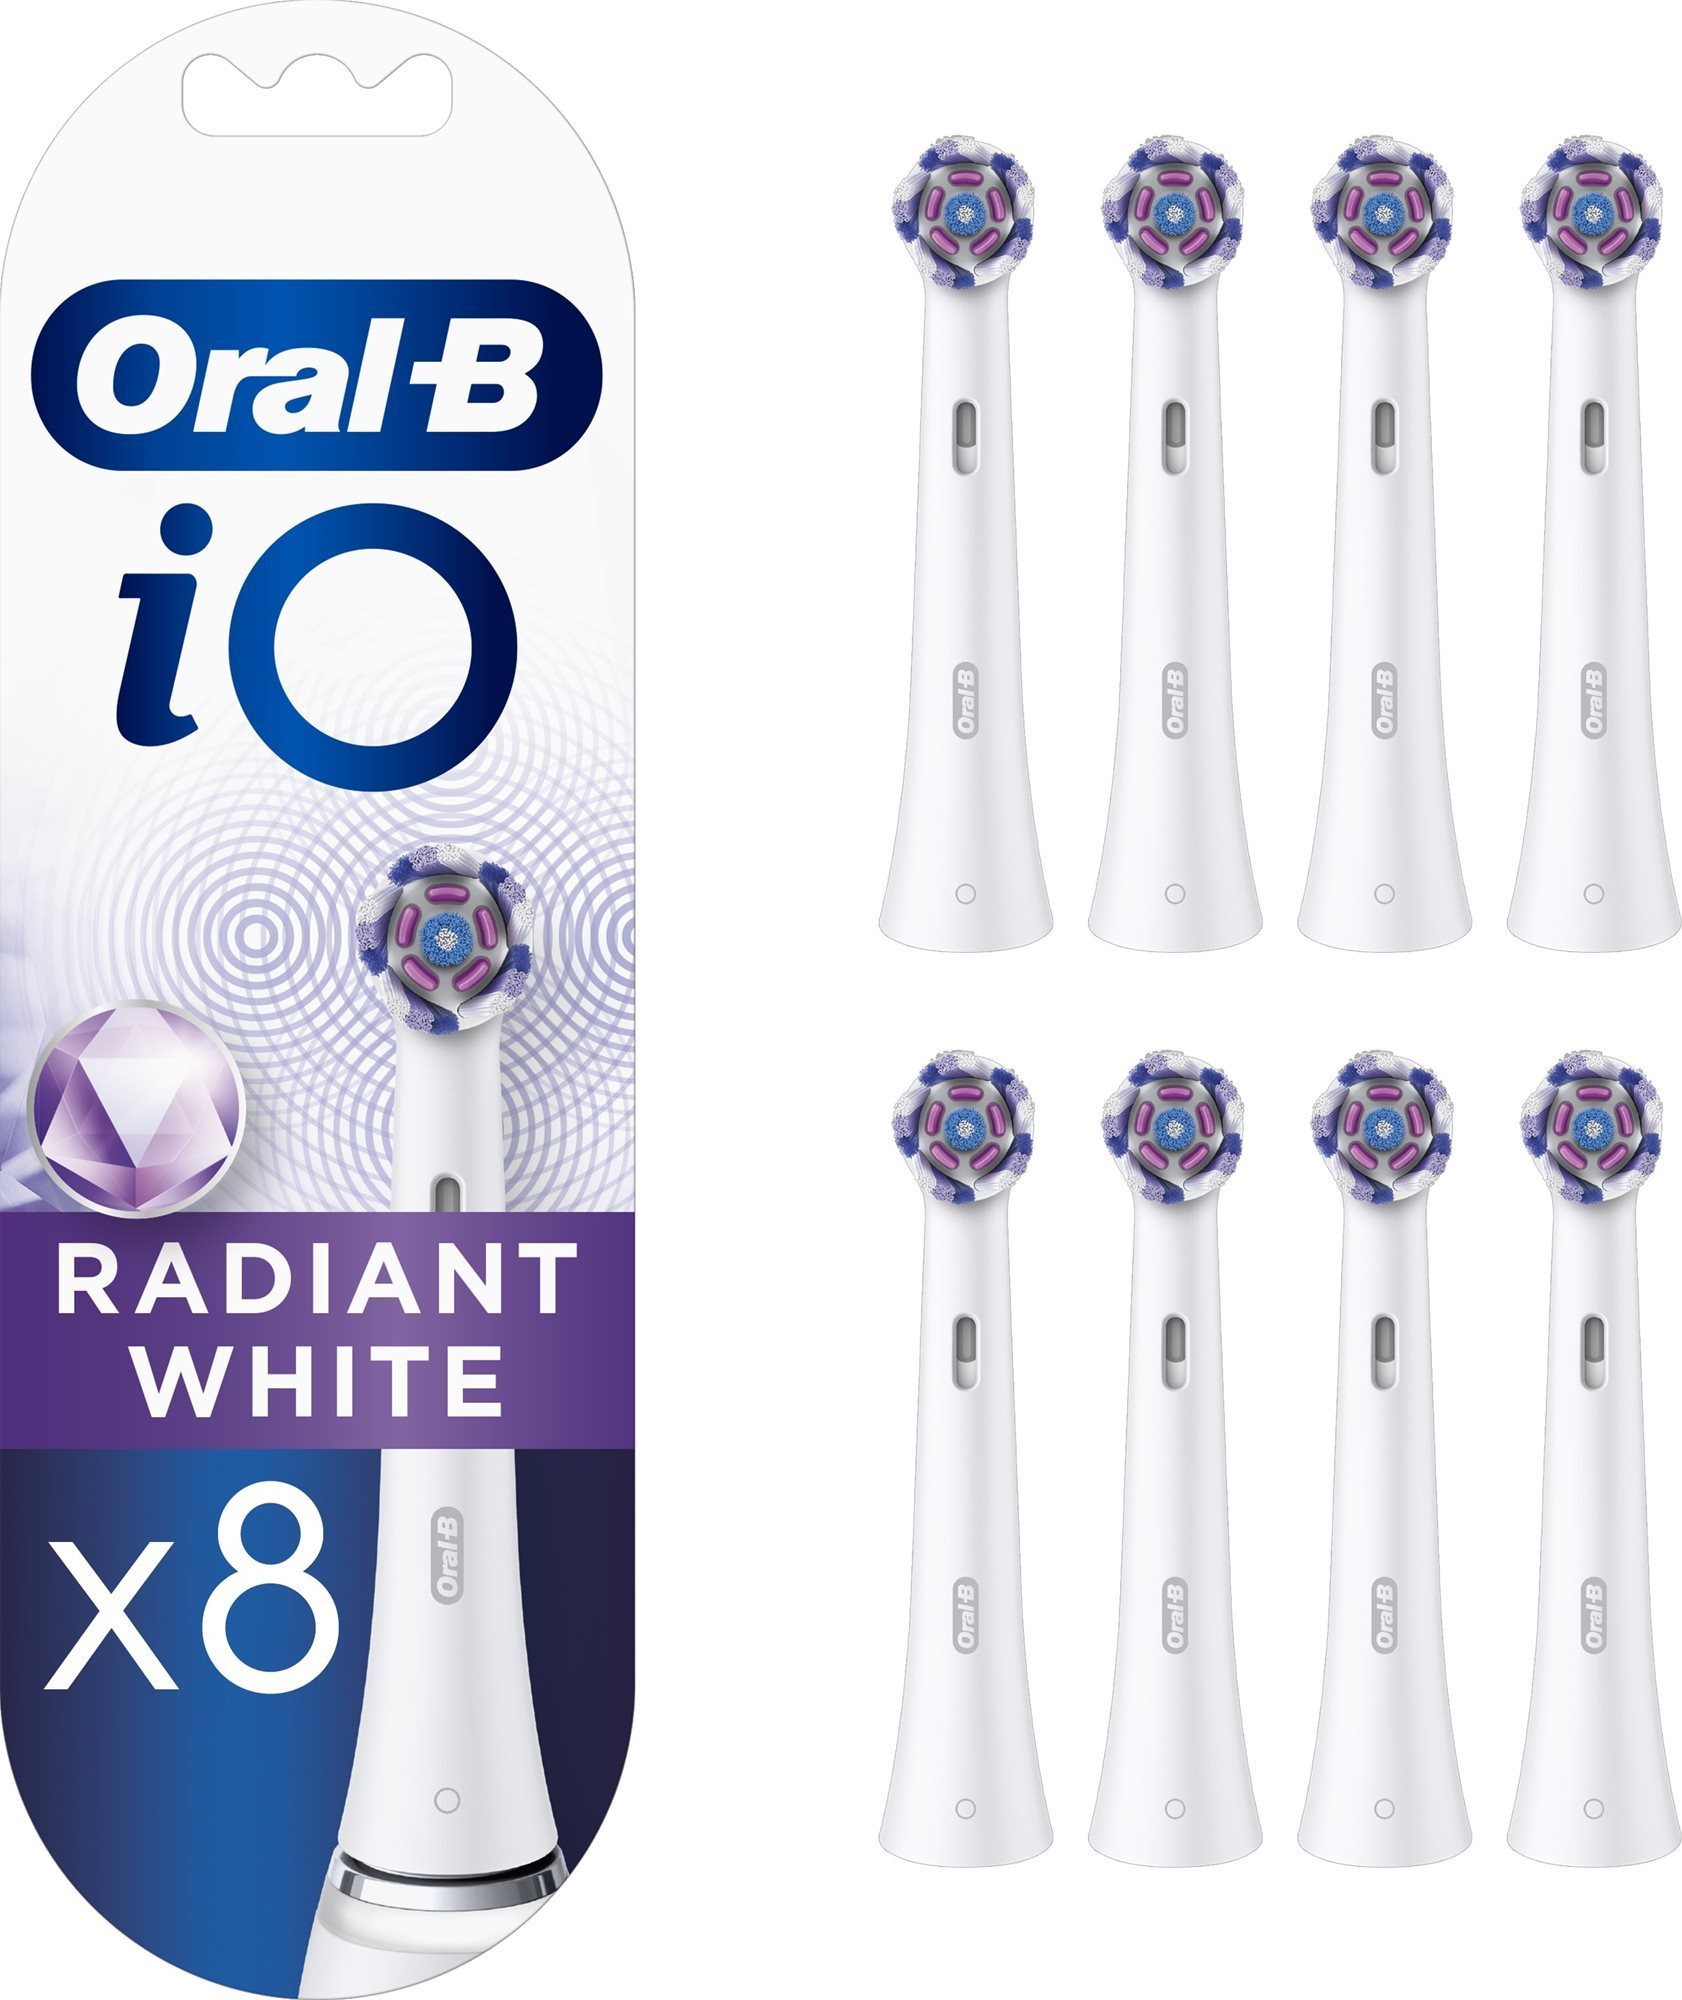 Oral-B iO Radiant White Kefefej, 4 db + Oral-B iO Radiant White Kefefej, 4 db